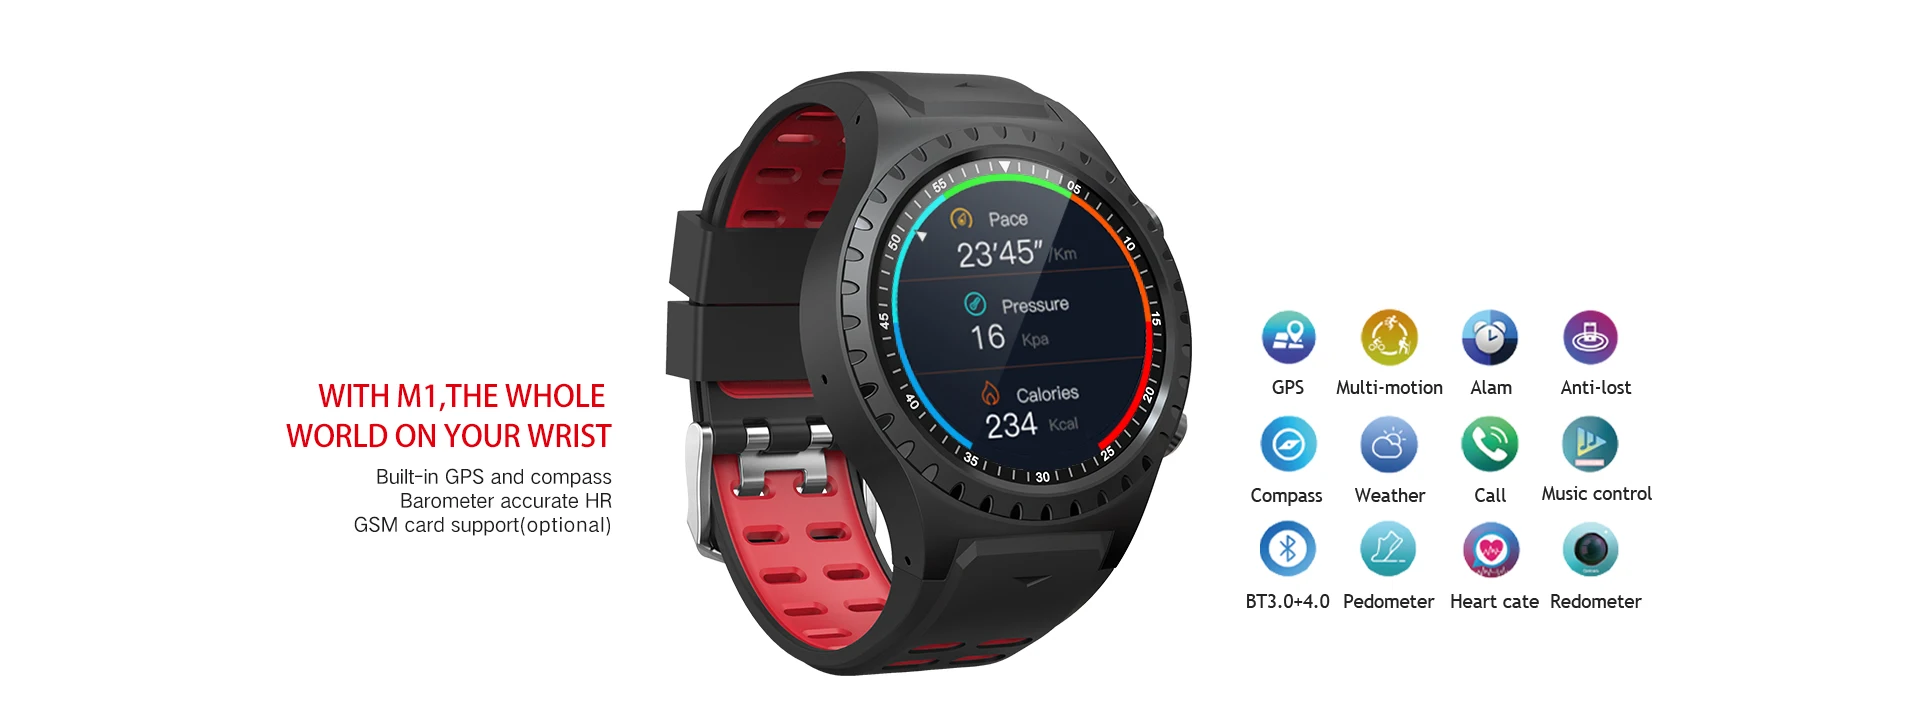 LEMFO Bluetooth Smartwatch gps Компас Барометр спортивные часы фитнес-трекер для измерения сердечного ритма Смарт-часы Android IOS поддержка 320 мАч